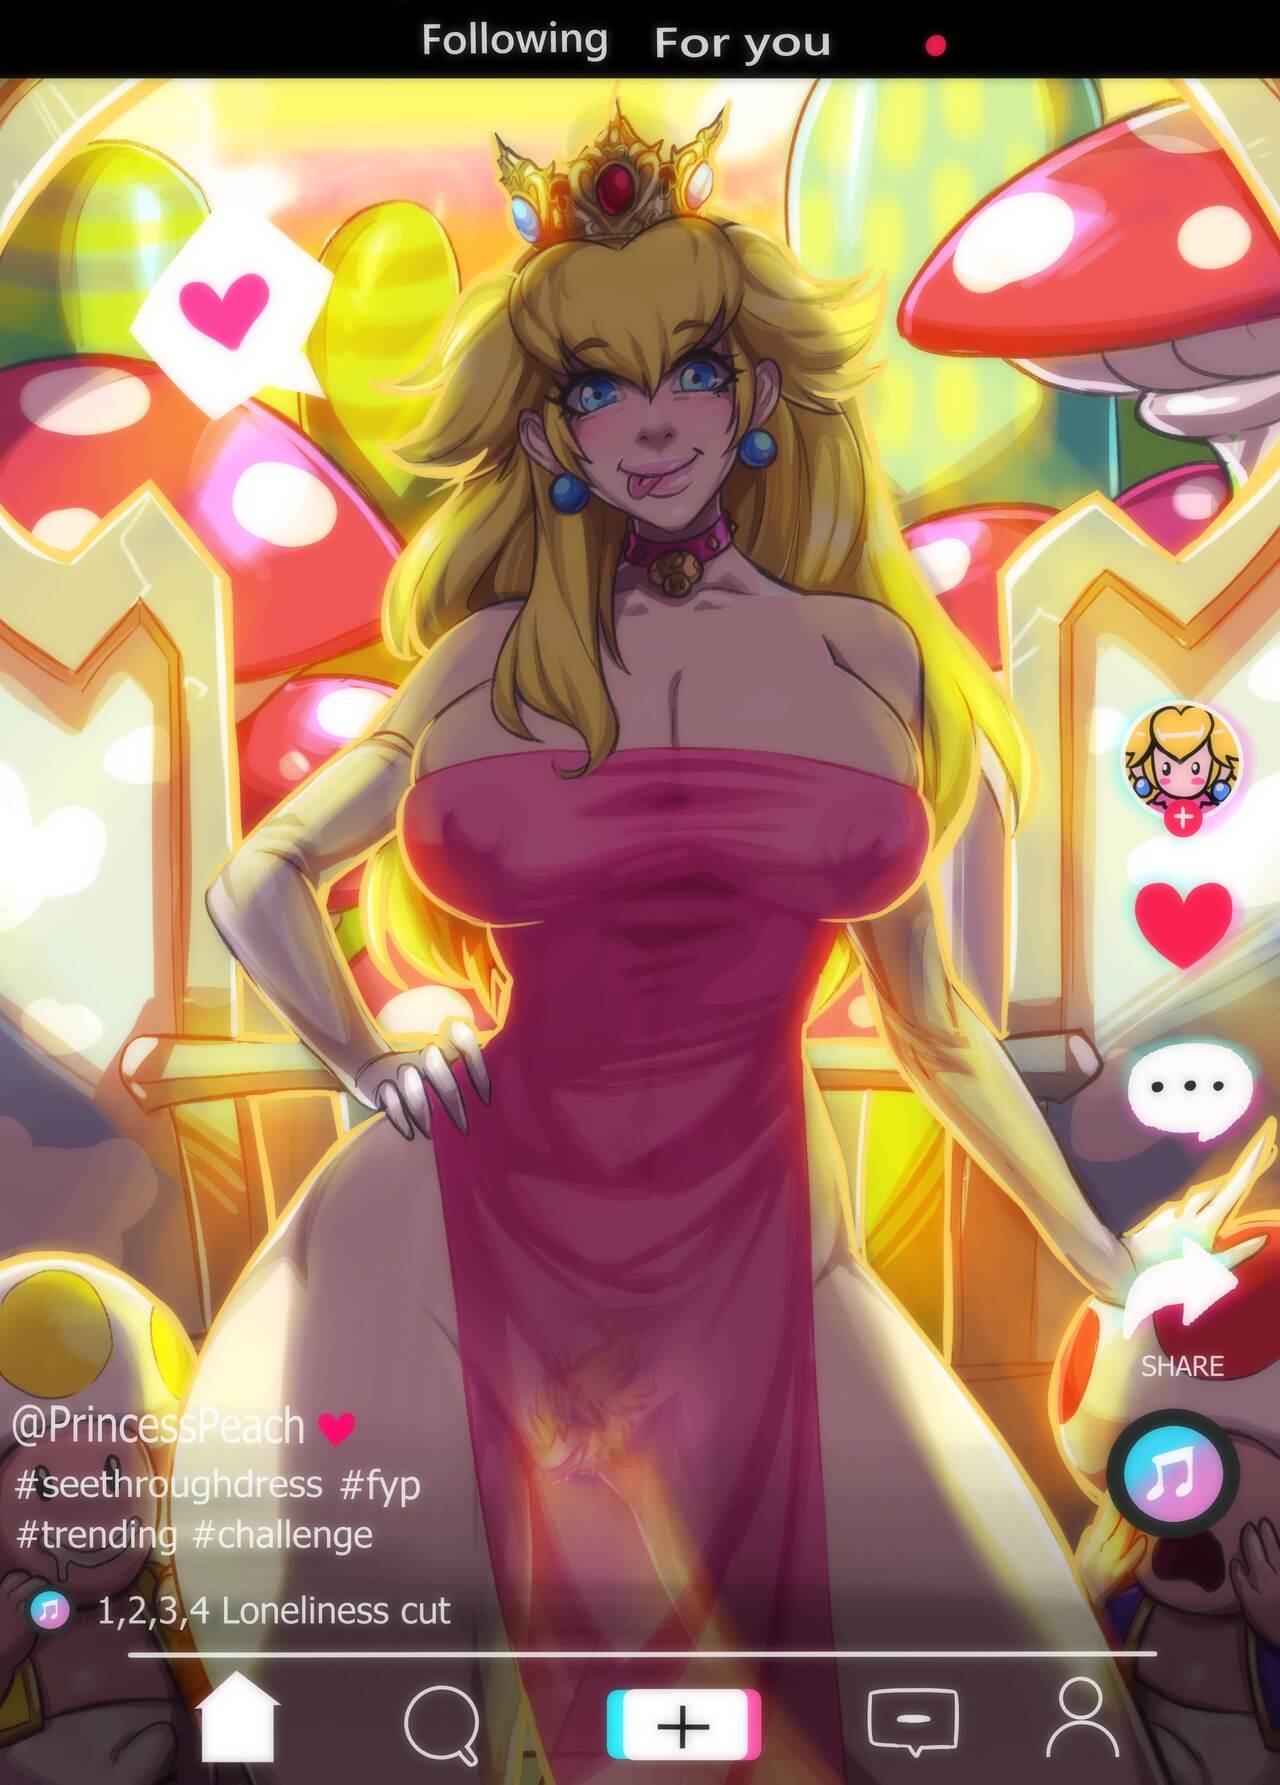 Peach Art Model Sex Porn - Princess Peach Porn - KingComiX.com